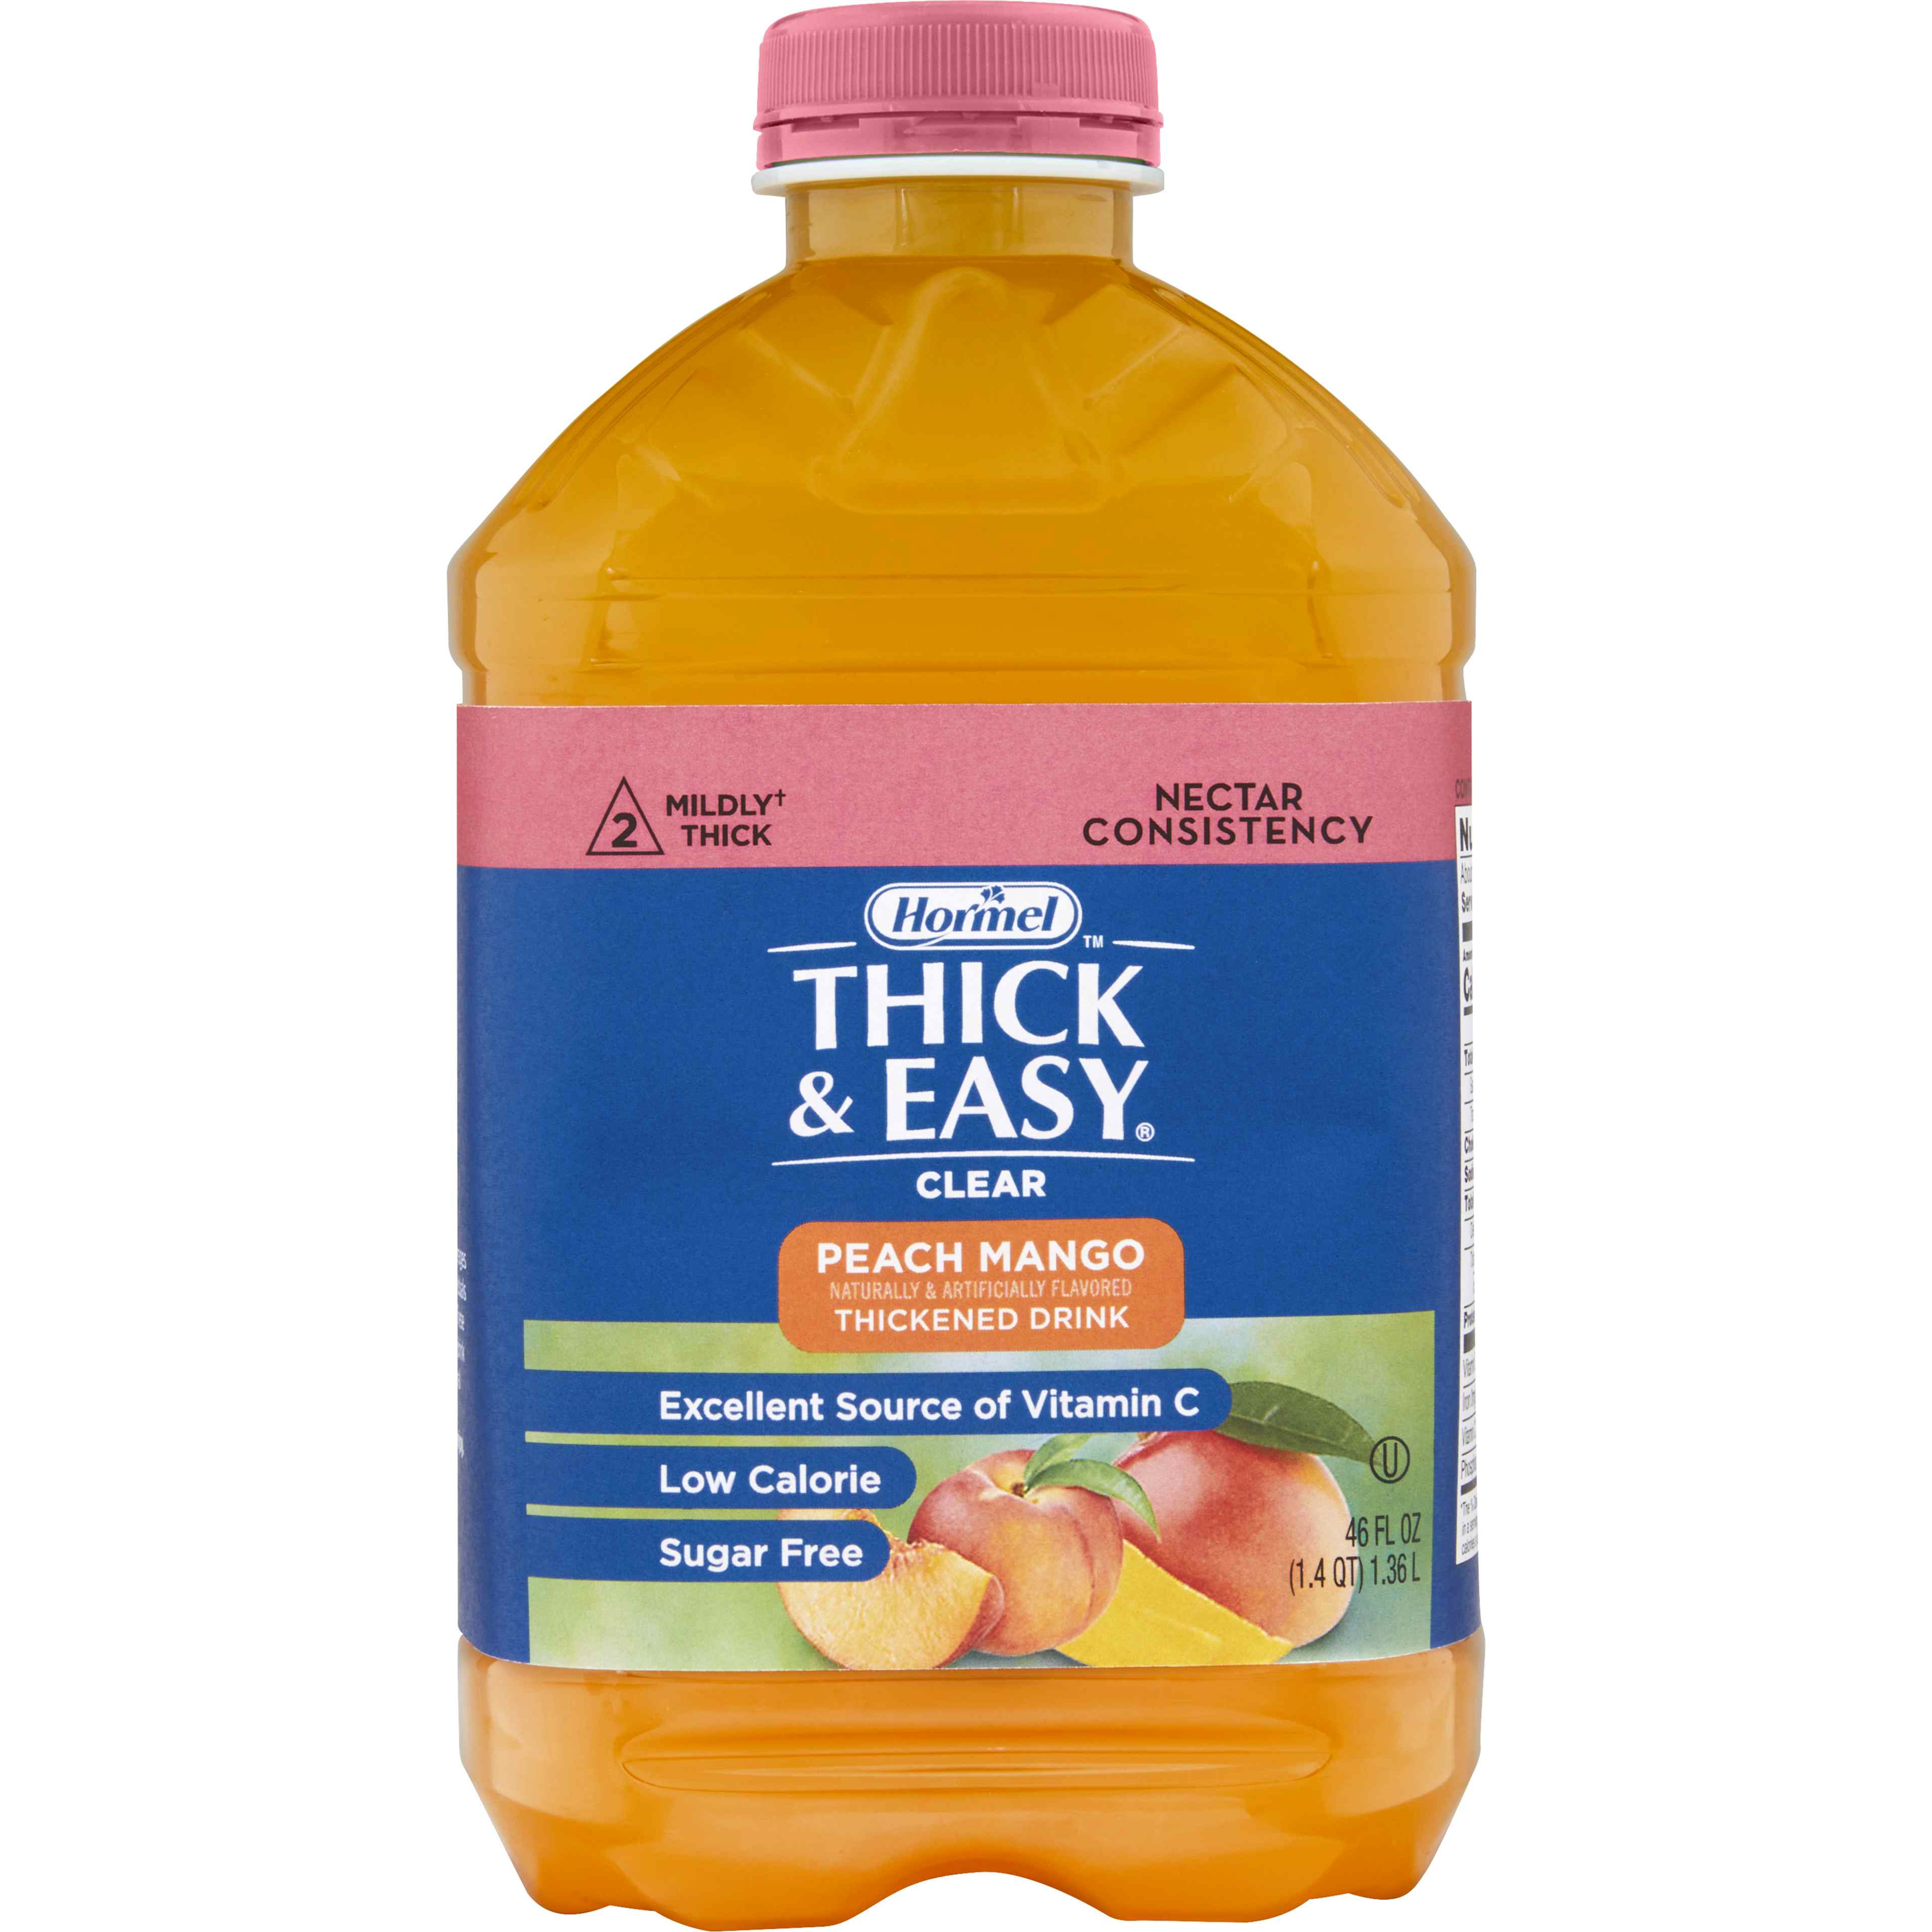 Hormel Thick & Easy Clear,  Sugar Free, Peach Mango, Nectar Consistency, 46 oz.